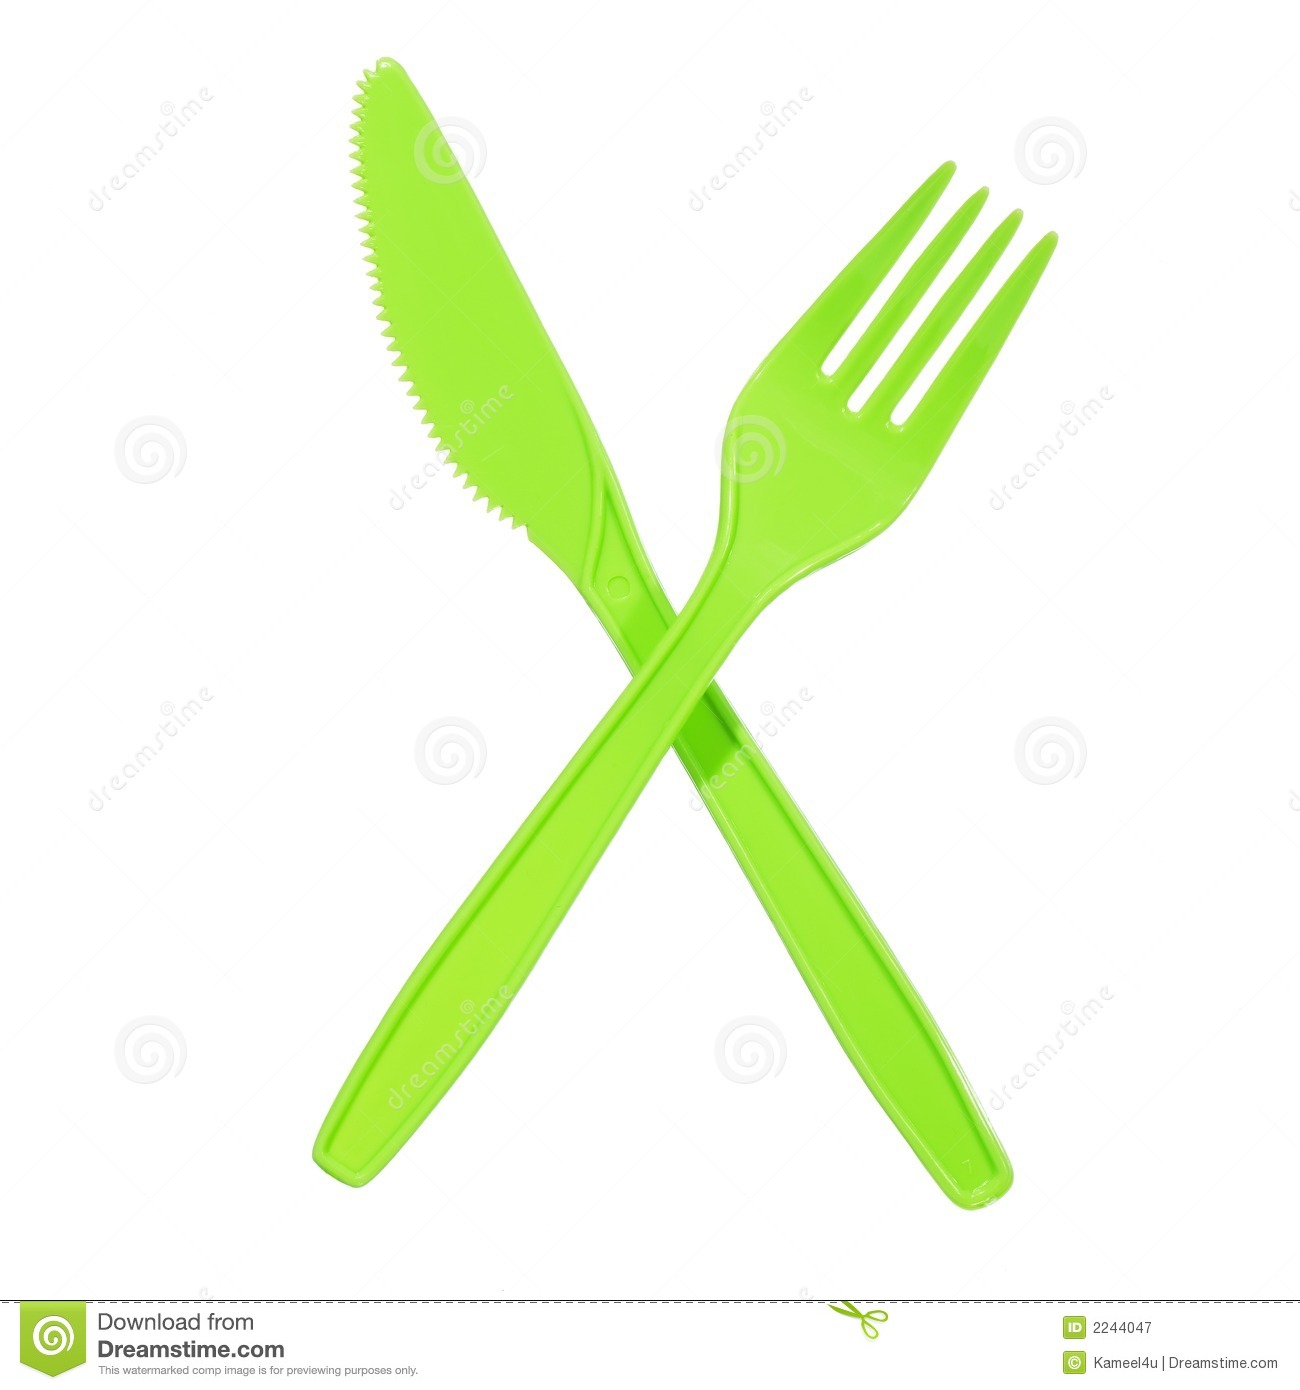 Vibrant green fork.